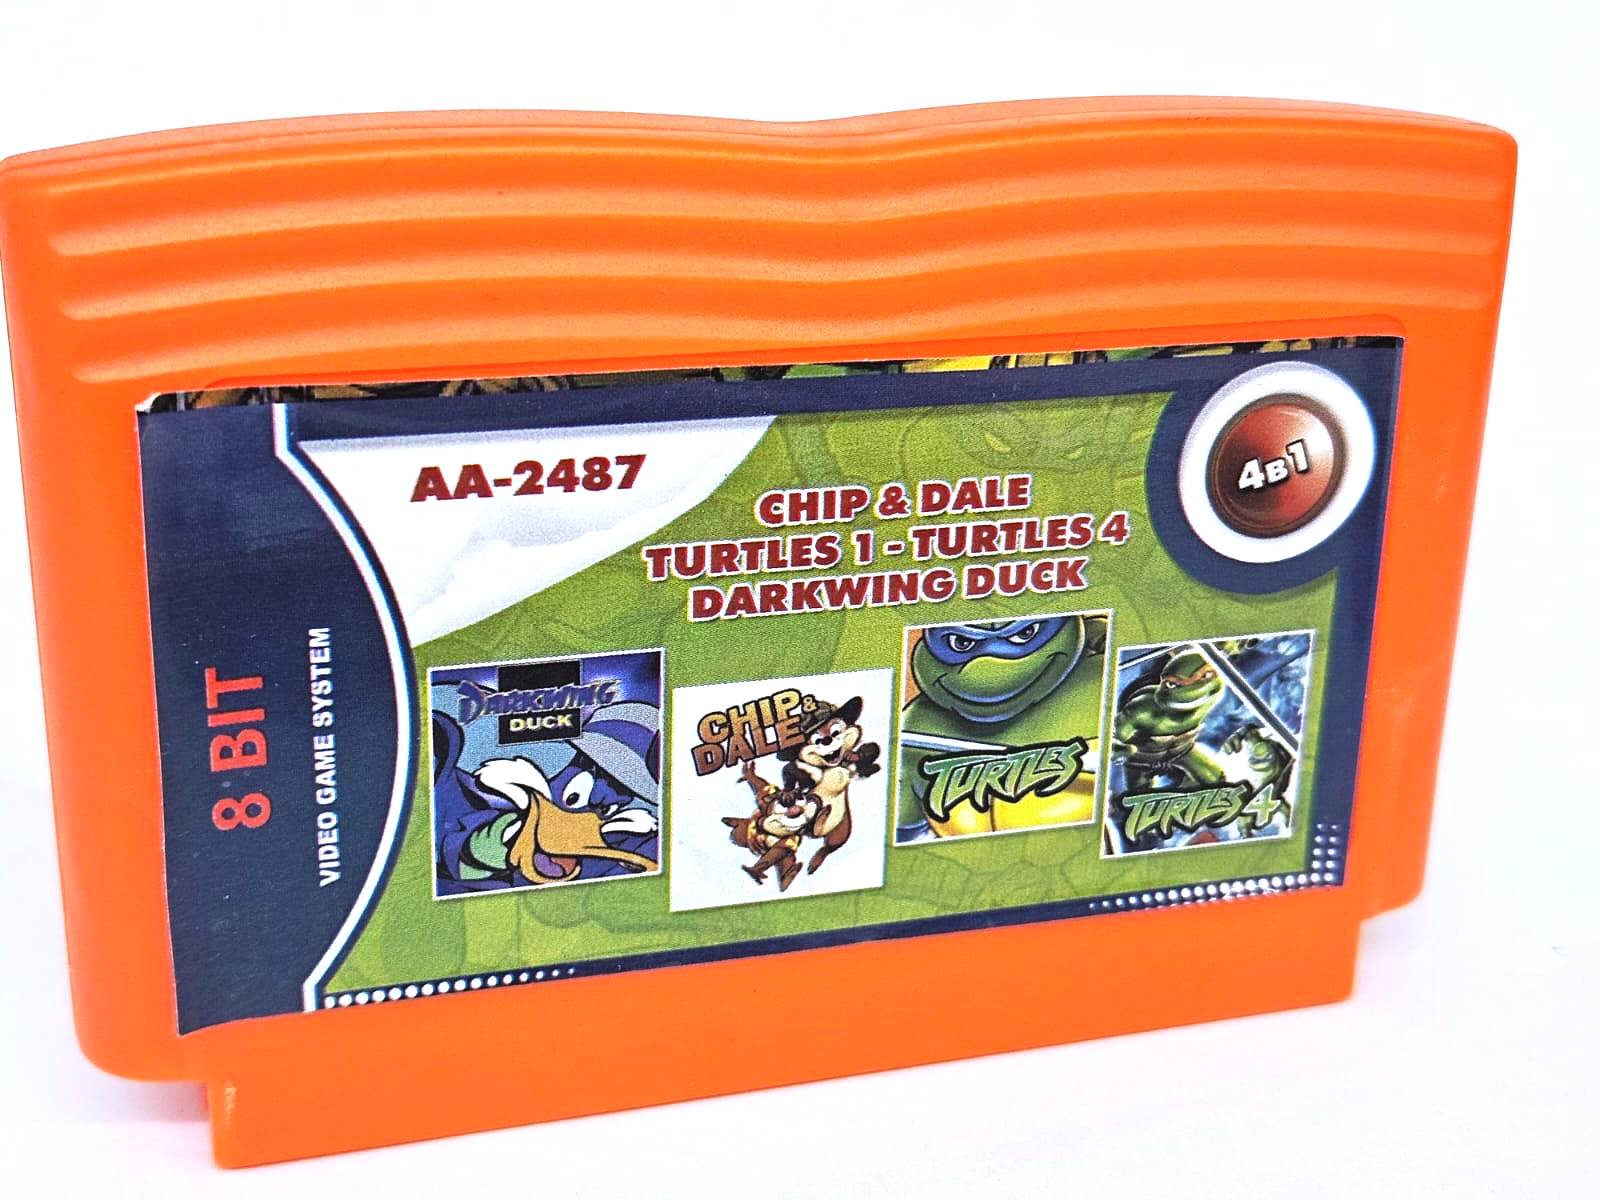    AA-2487 4 in 1 (Dendy), Chip & Dale, Turtles, Turtles 4, Darkwing Duck